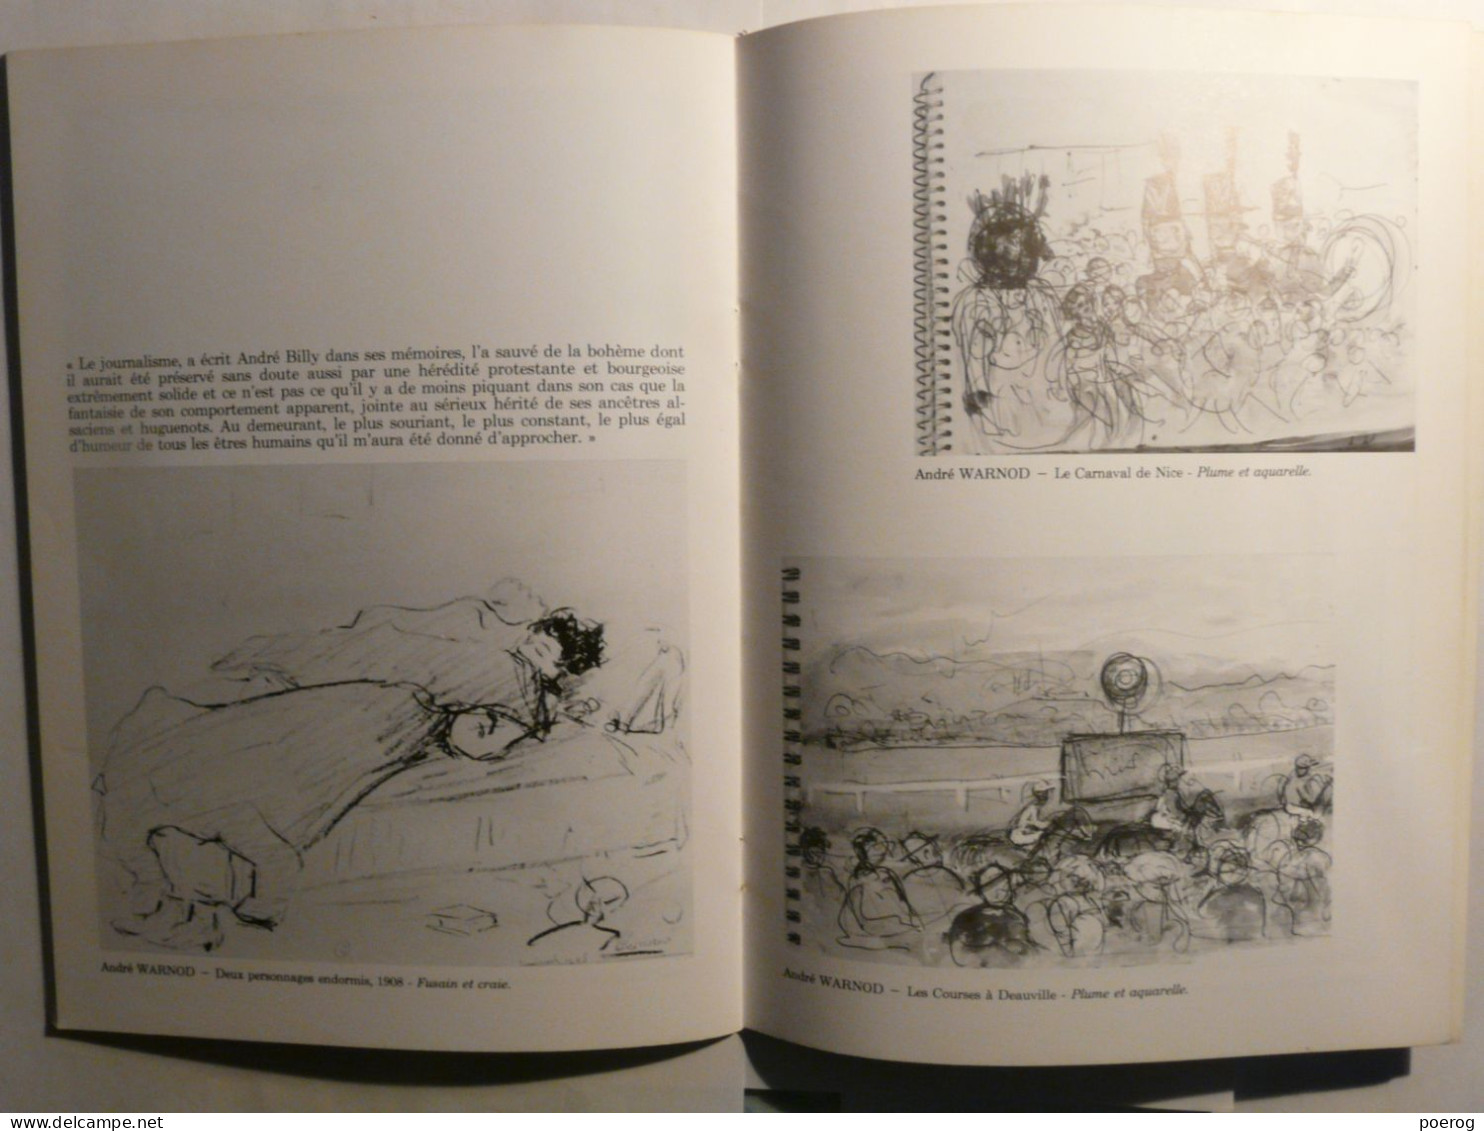 HOMMAGE A ANDRE WARNOD - MAM PARIS - 1985 - Monographie Illustrateur (1885 - 1960) RENE HUYGUE JEAN CASSOU - Art